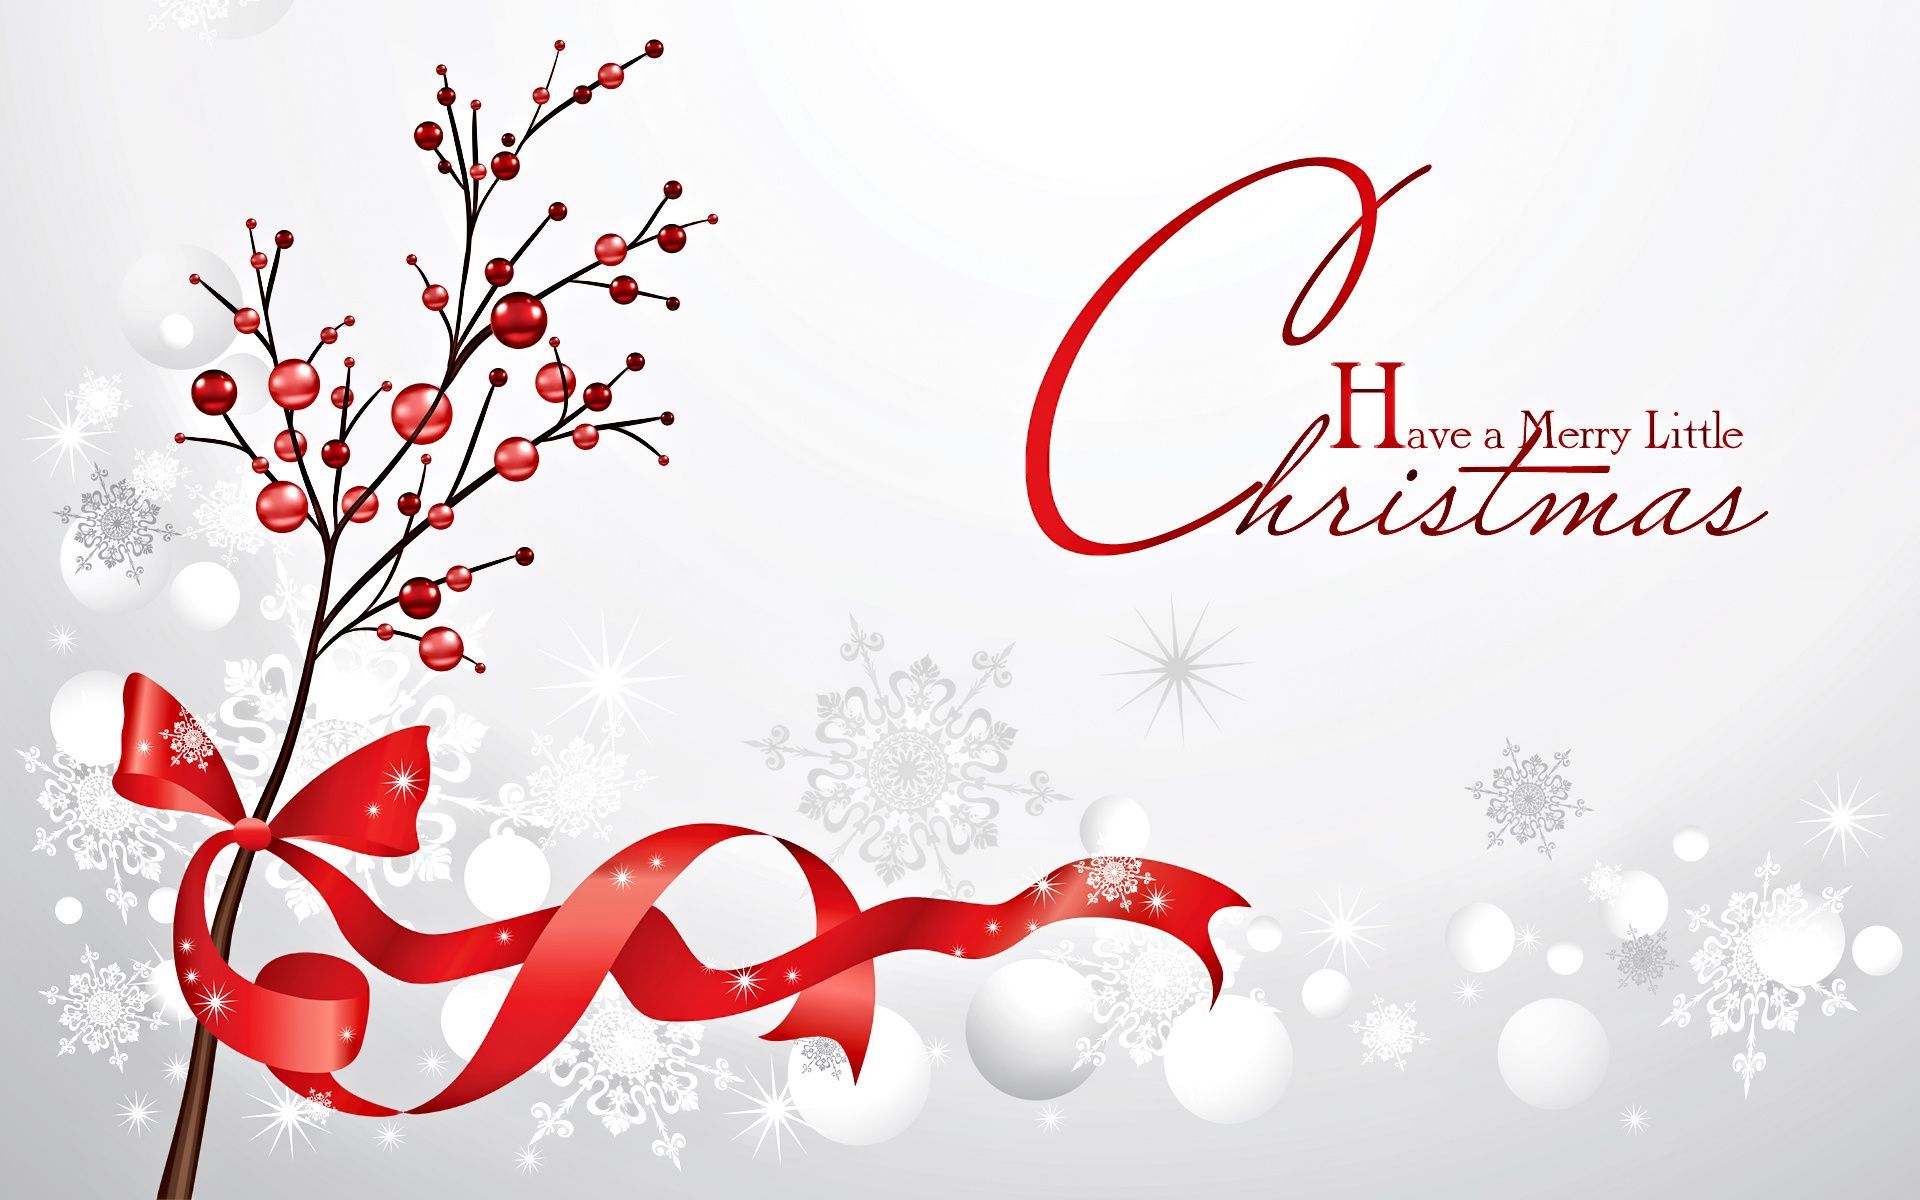 Christmas Greetings Animated Picture “Christmas Season's Greetings”